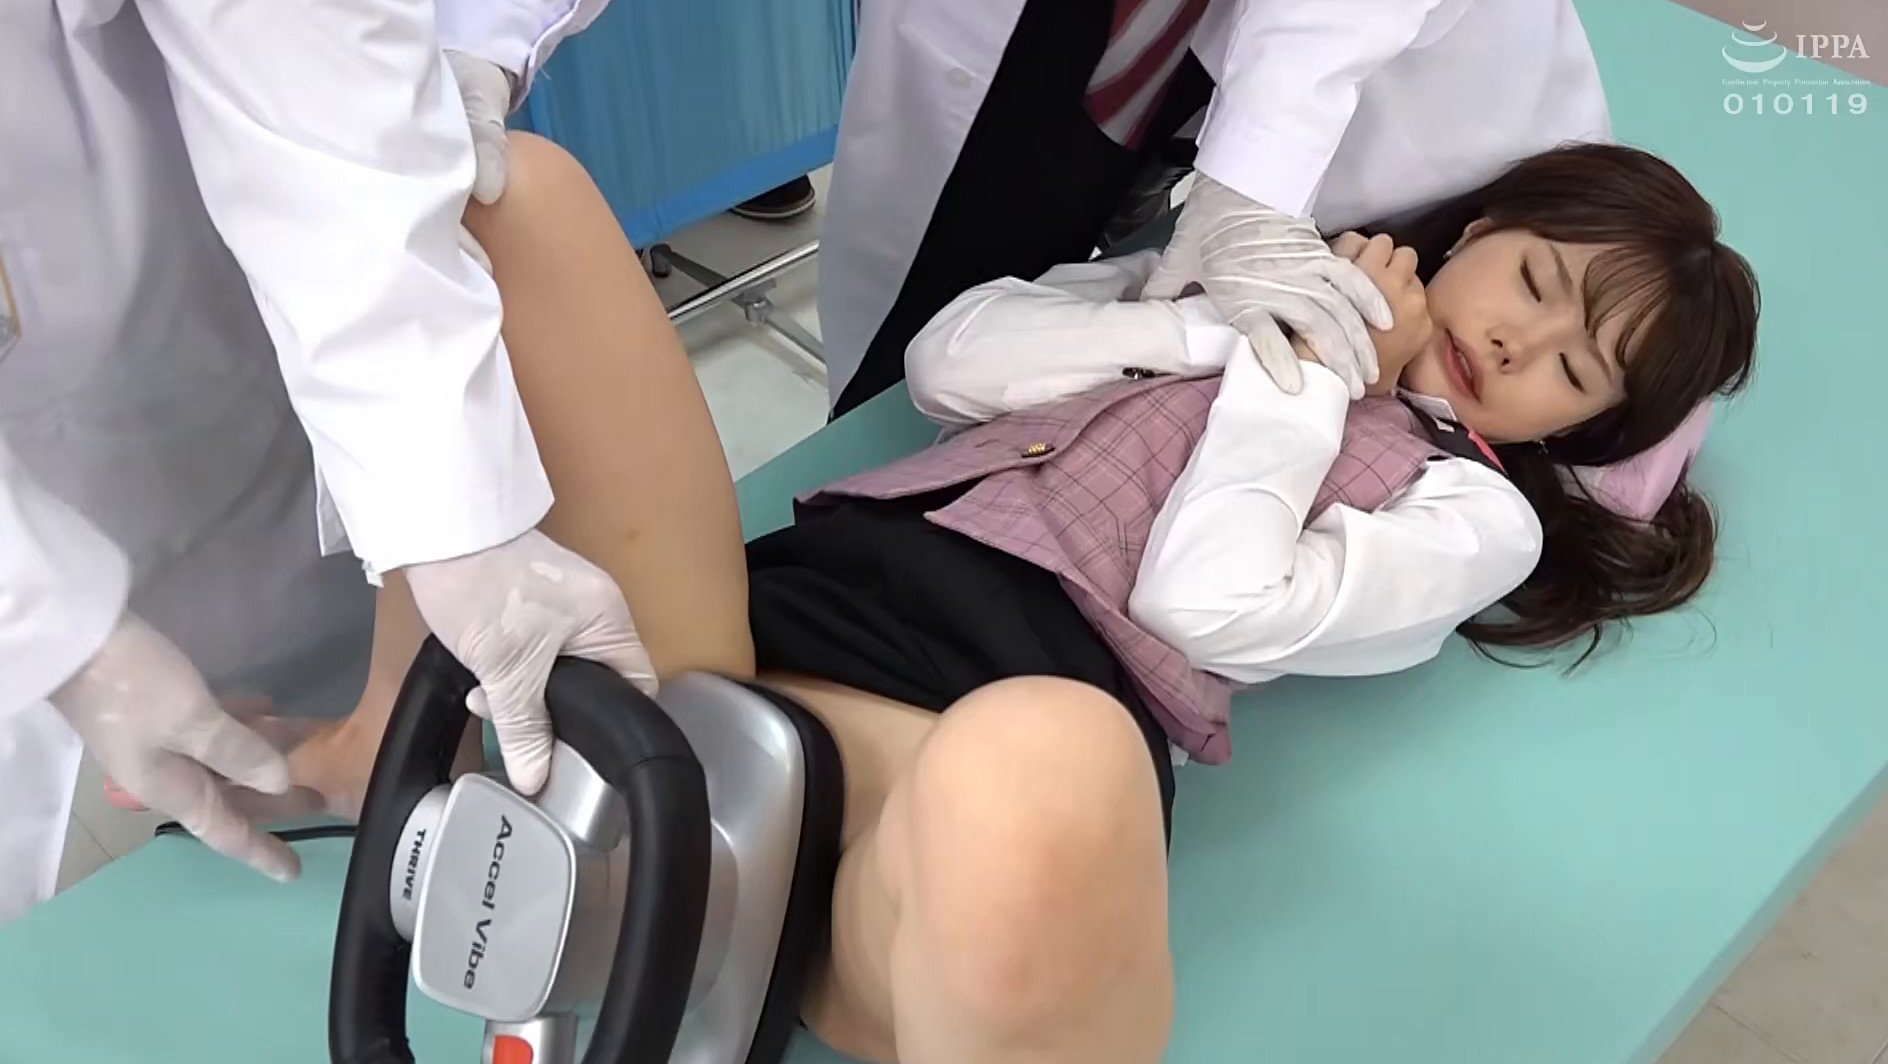 эротика медосмотр японских школьниц фото 24